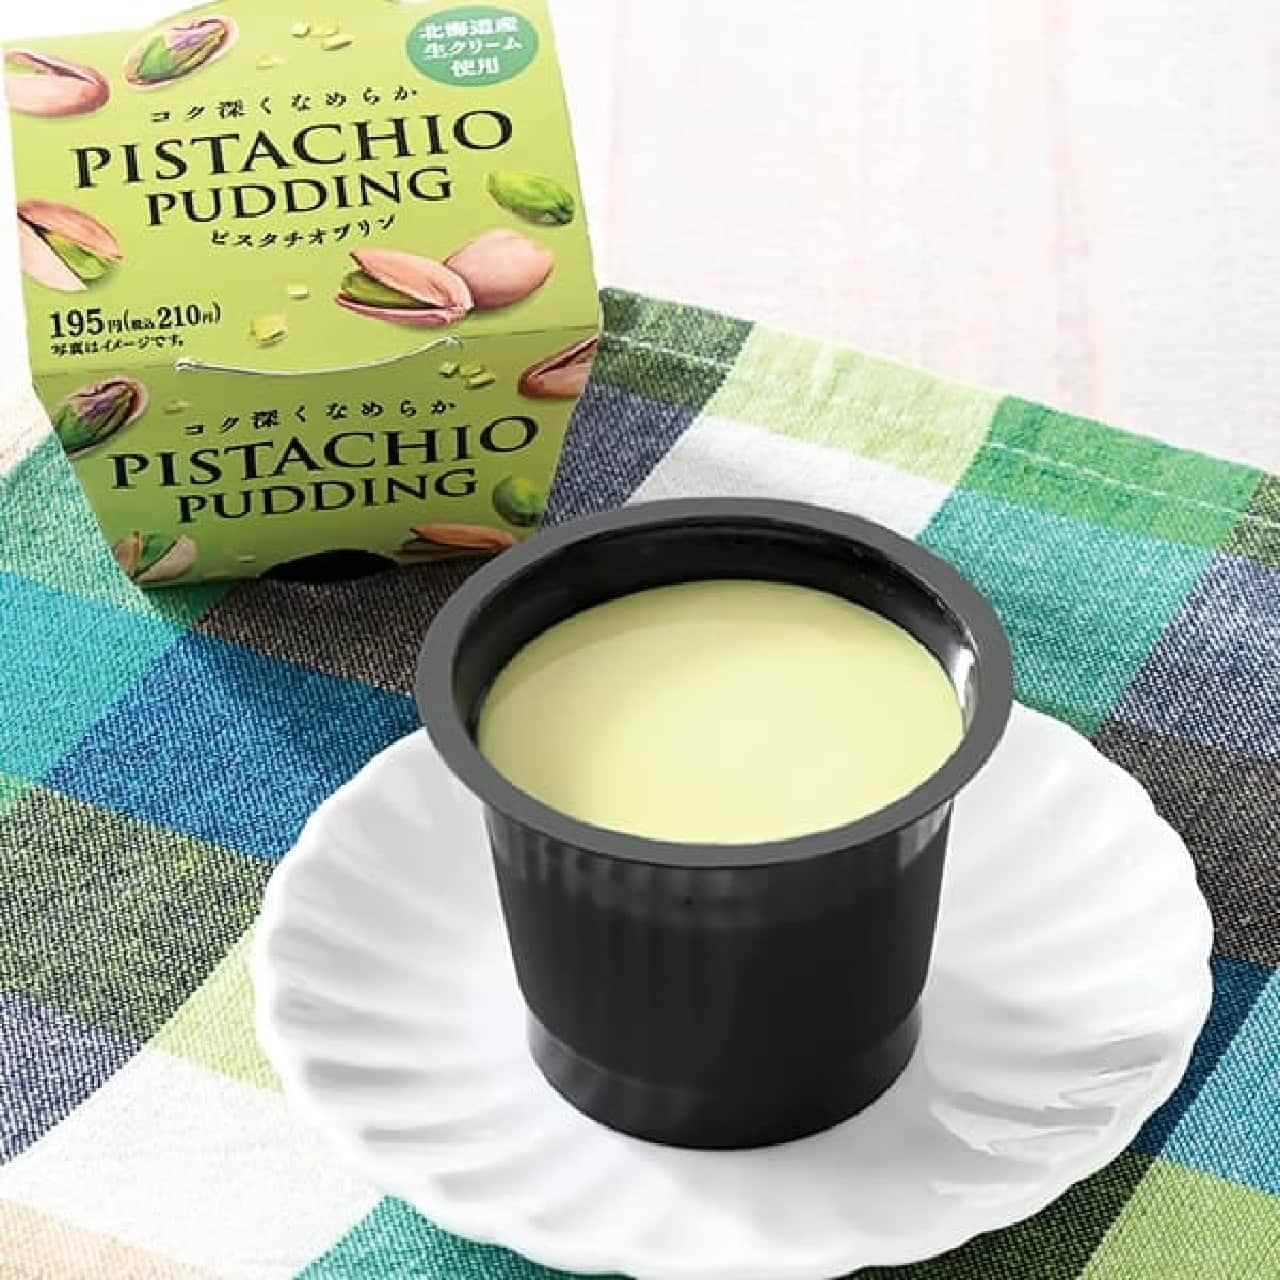 FamilyMart "Pistachio Pudding